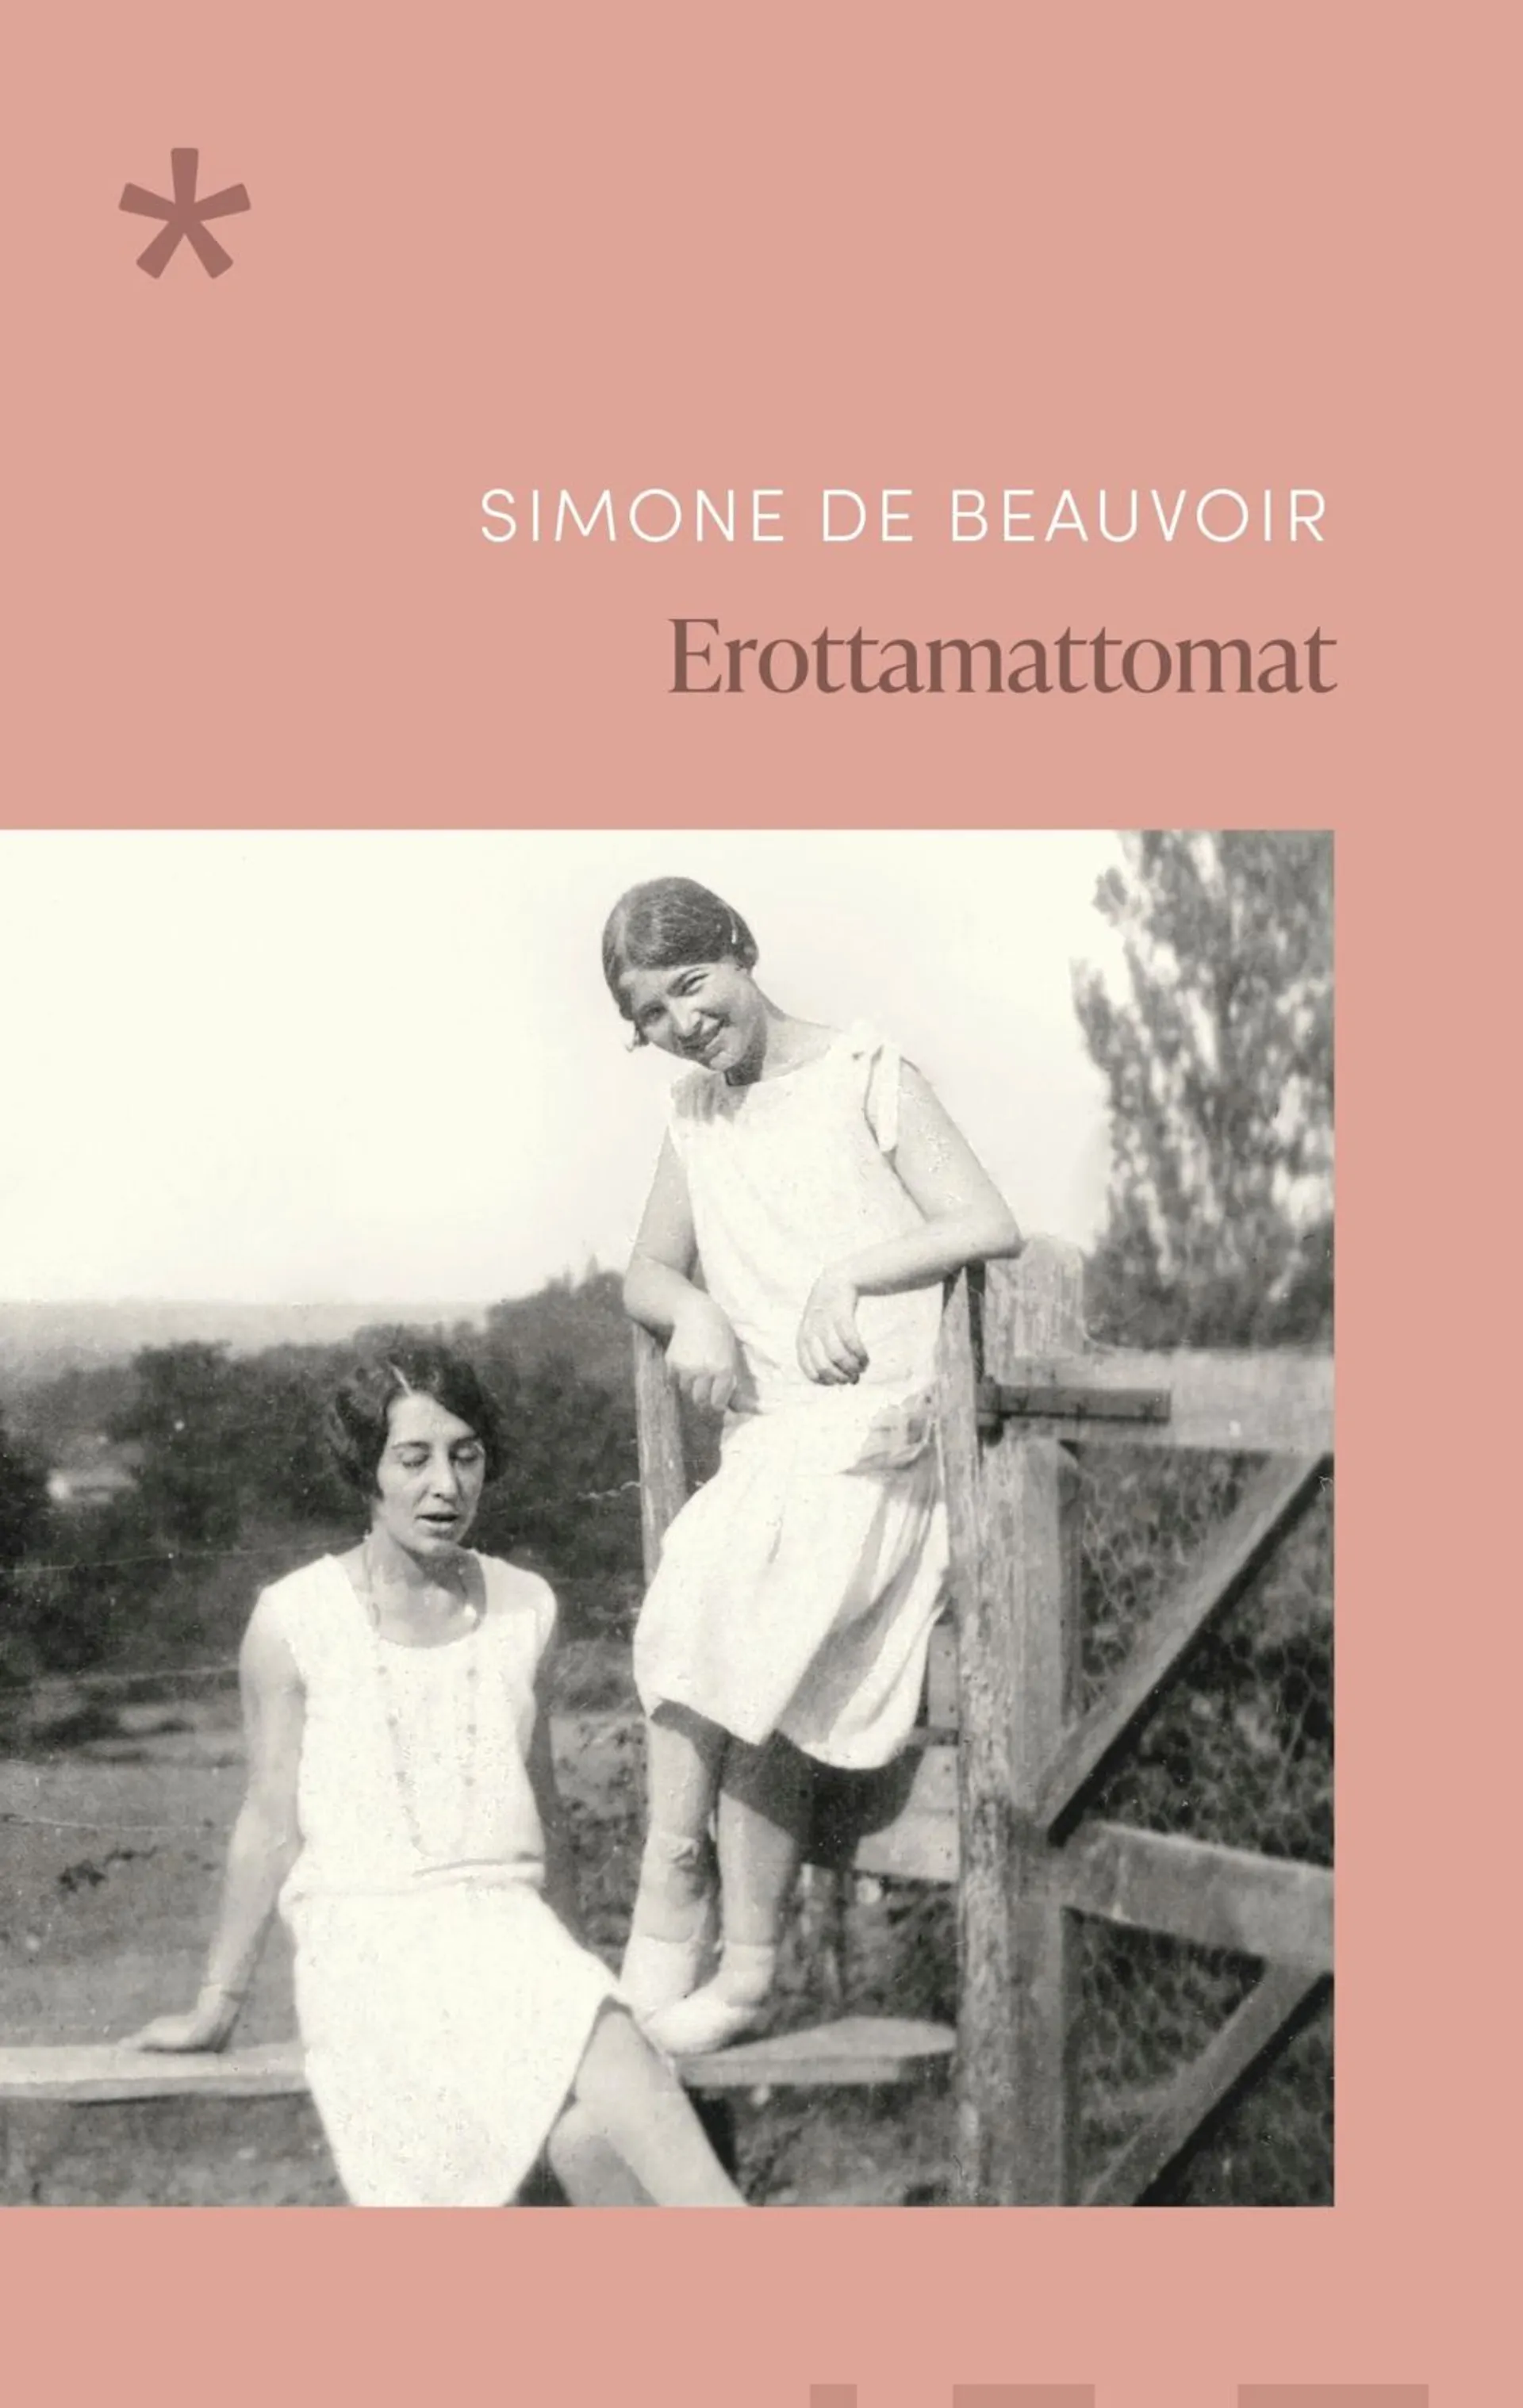 Beauvoir, Erottamattomat